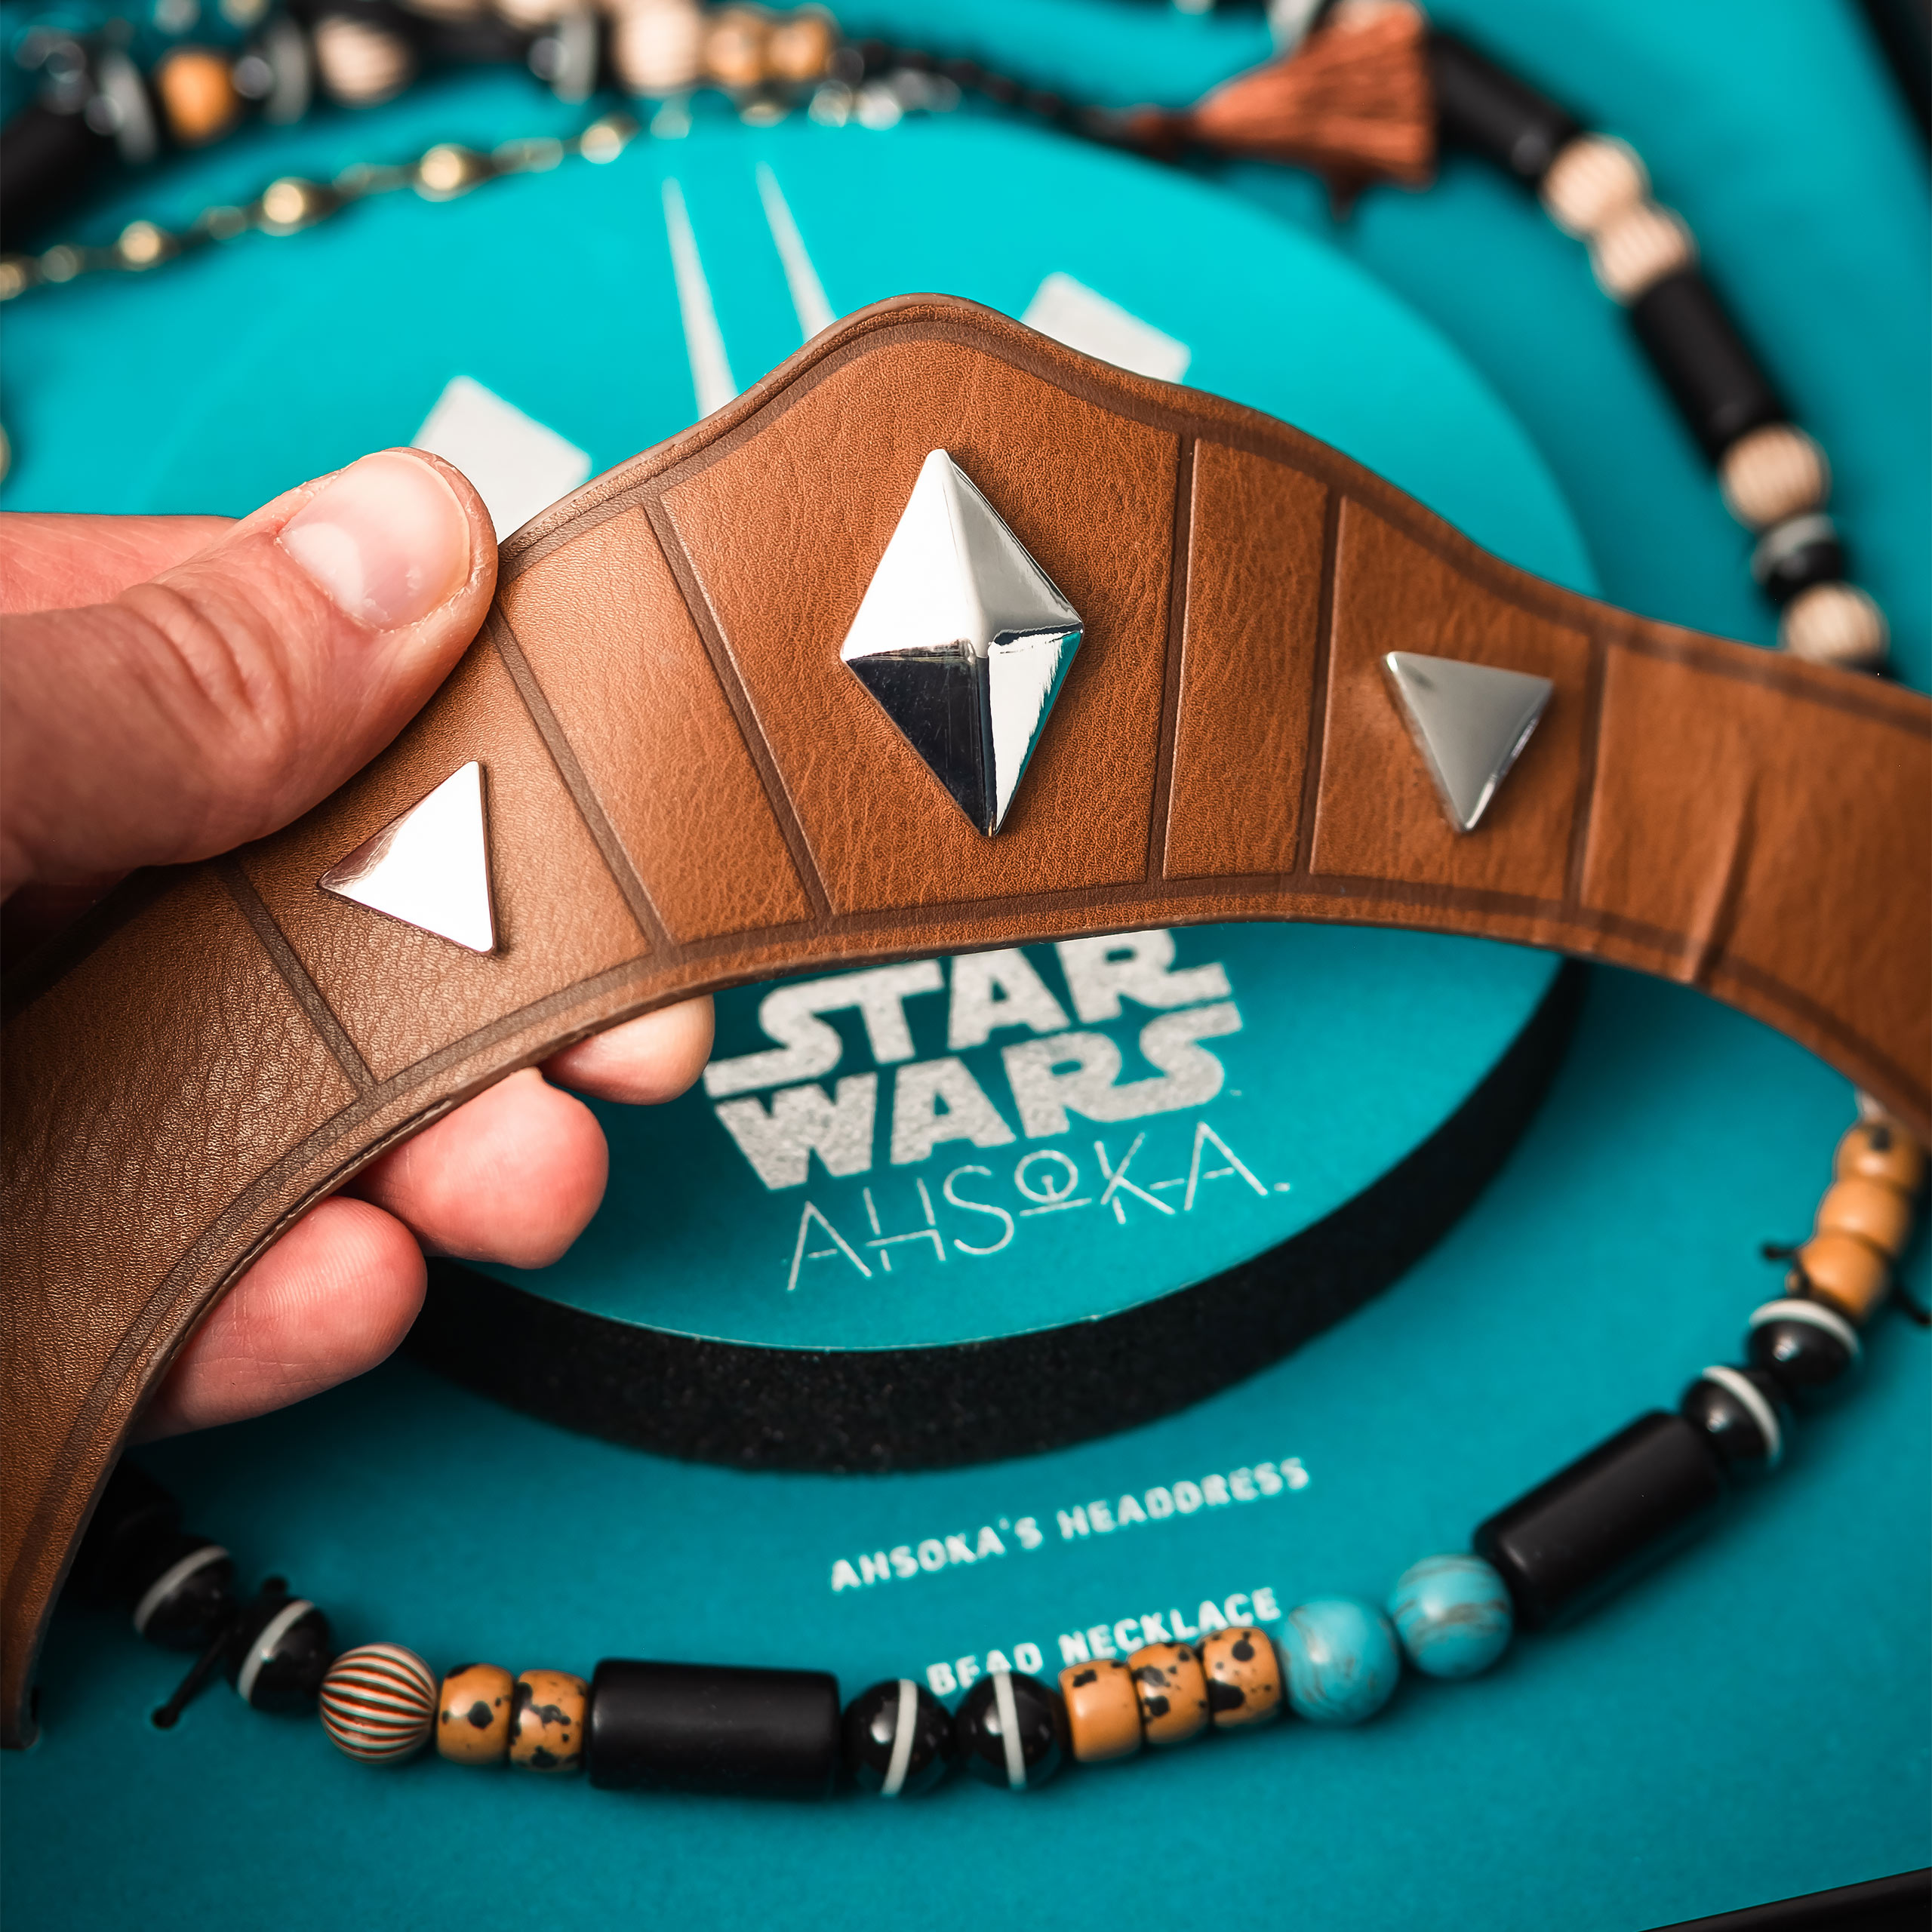 Star Wars - Ahsoka Stirnband und Gürtelperlen Replik limitiert